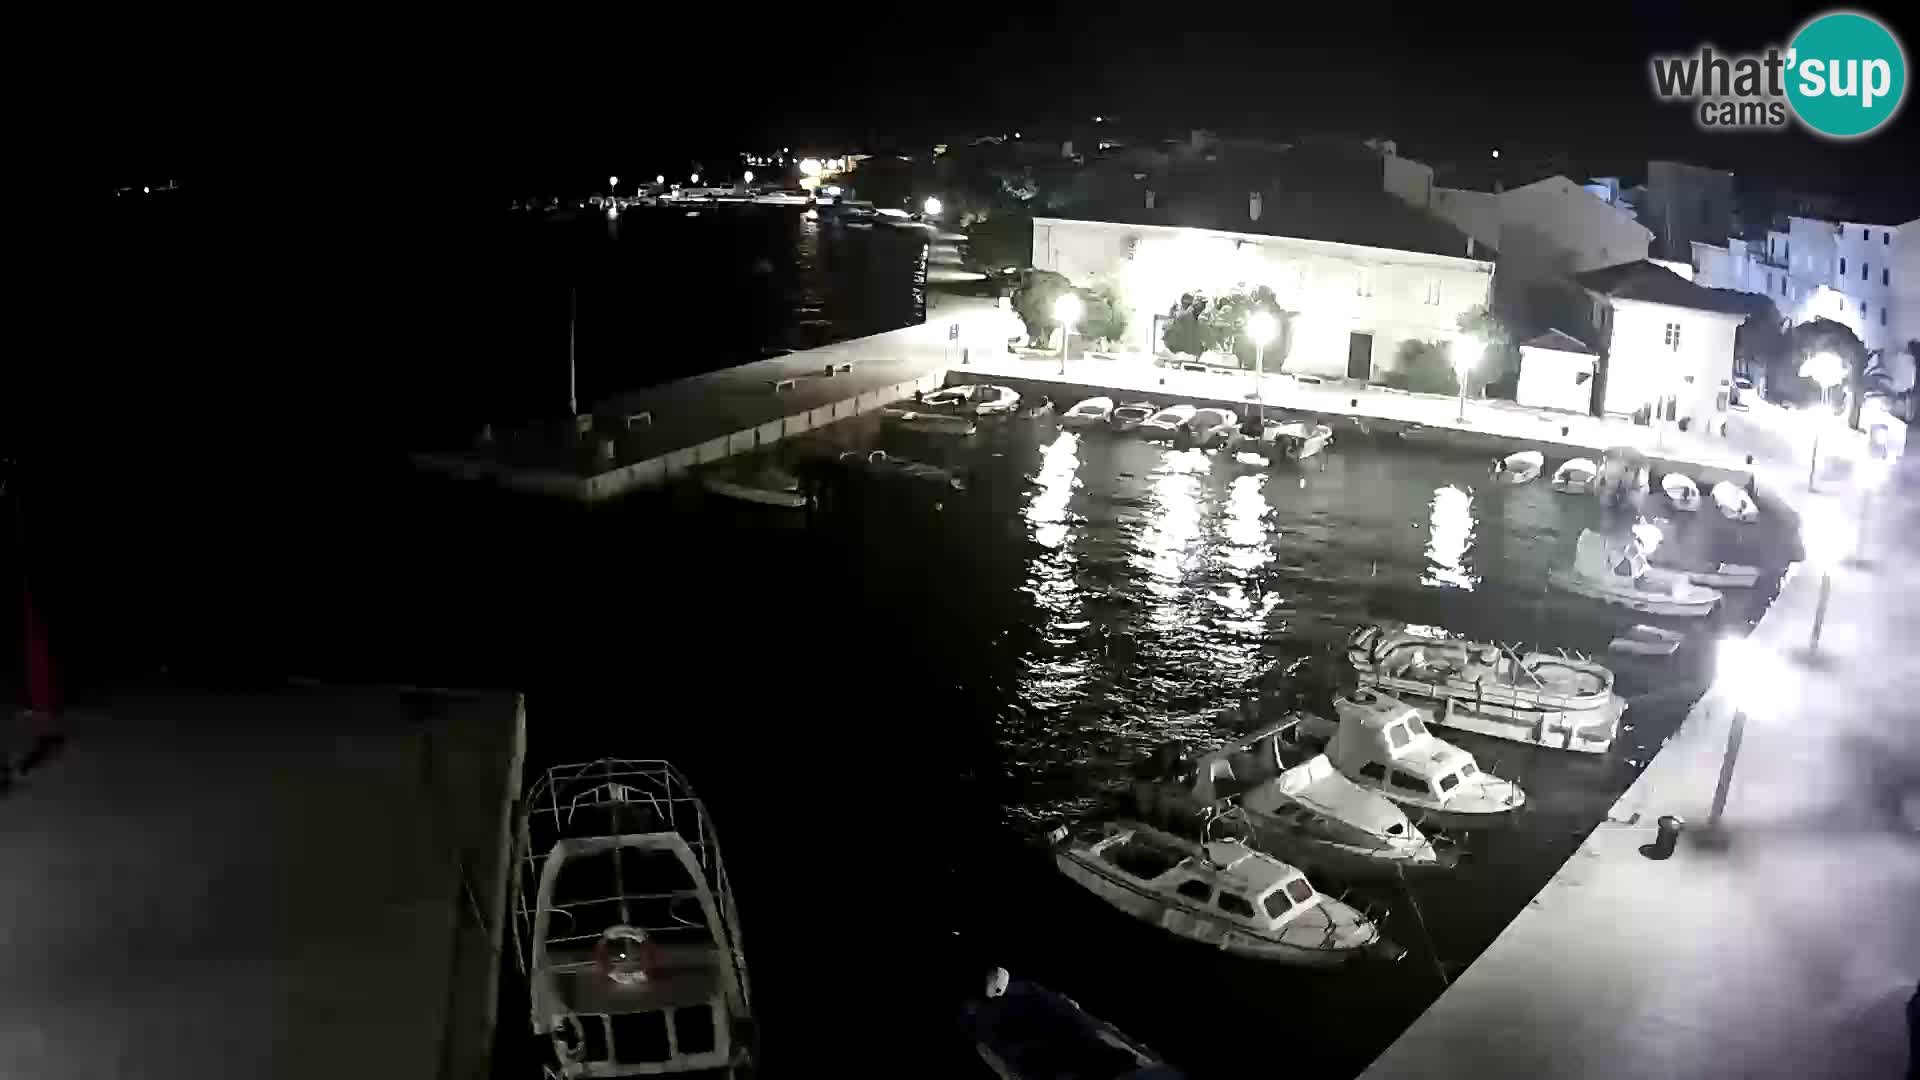 Pag webcam – Stadthafen